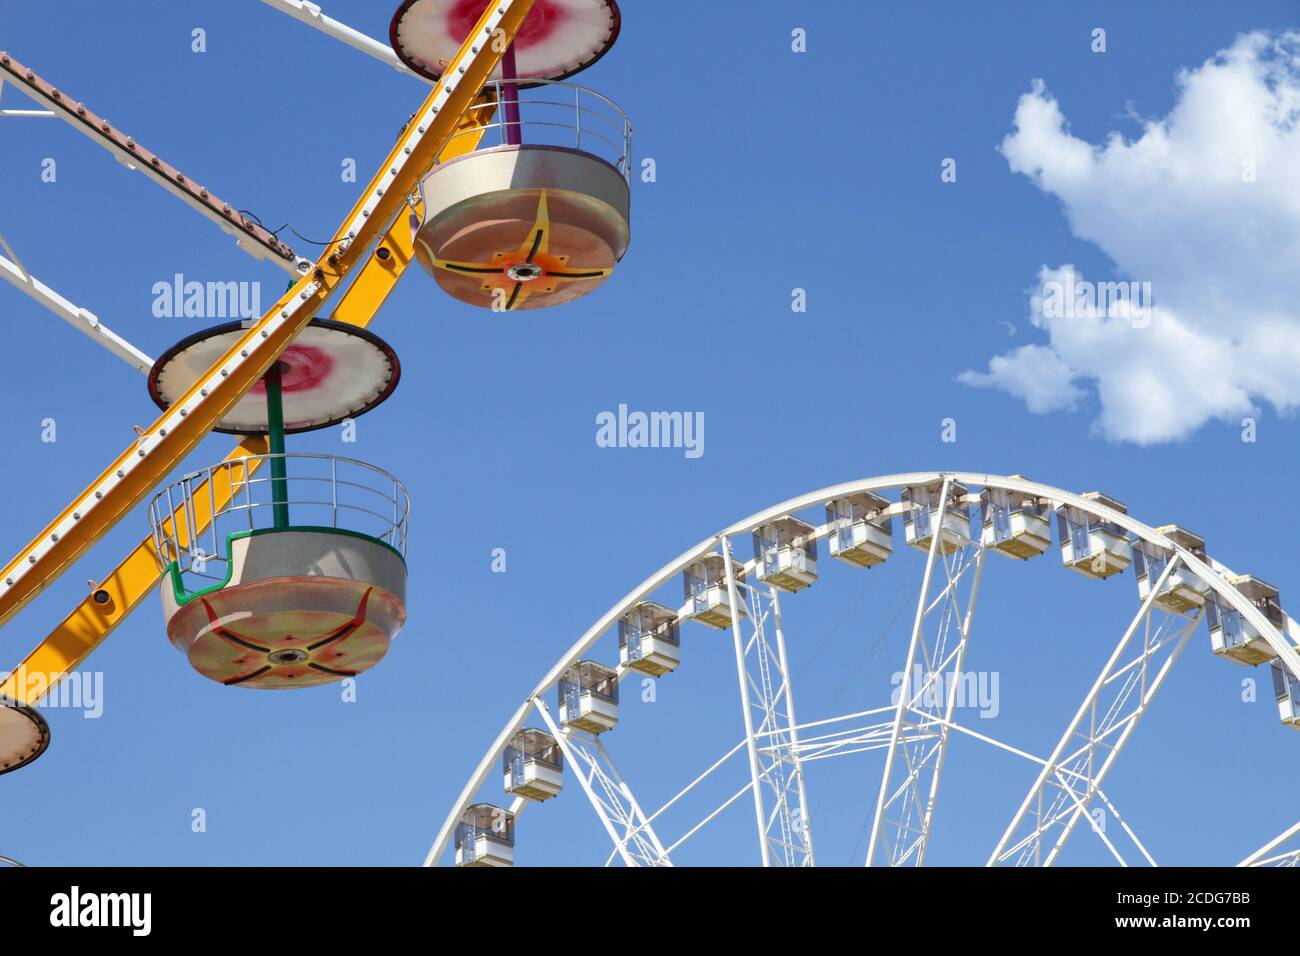 Norias de Ferris en un parque de atracciones Foto de stock